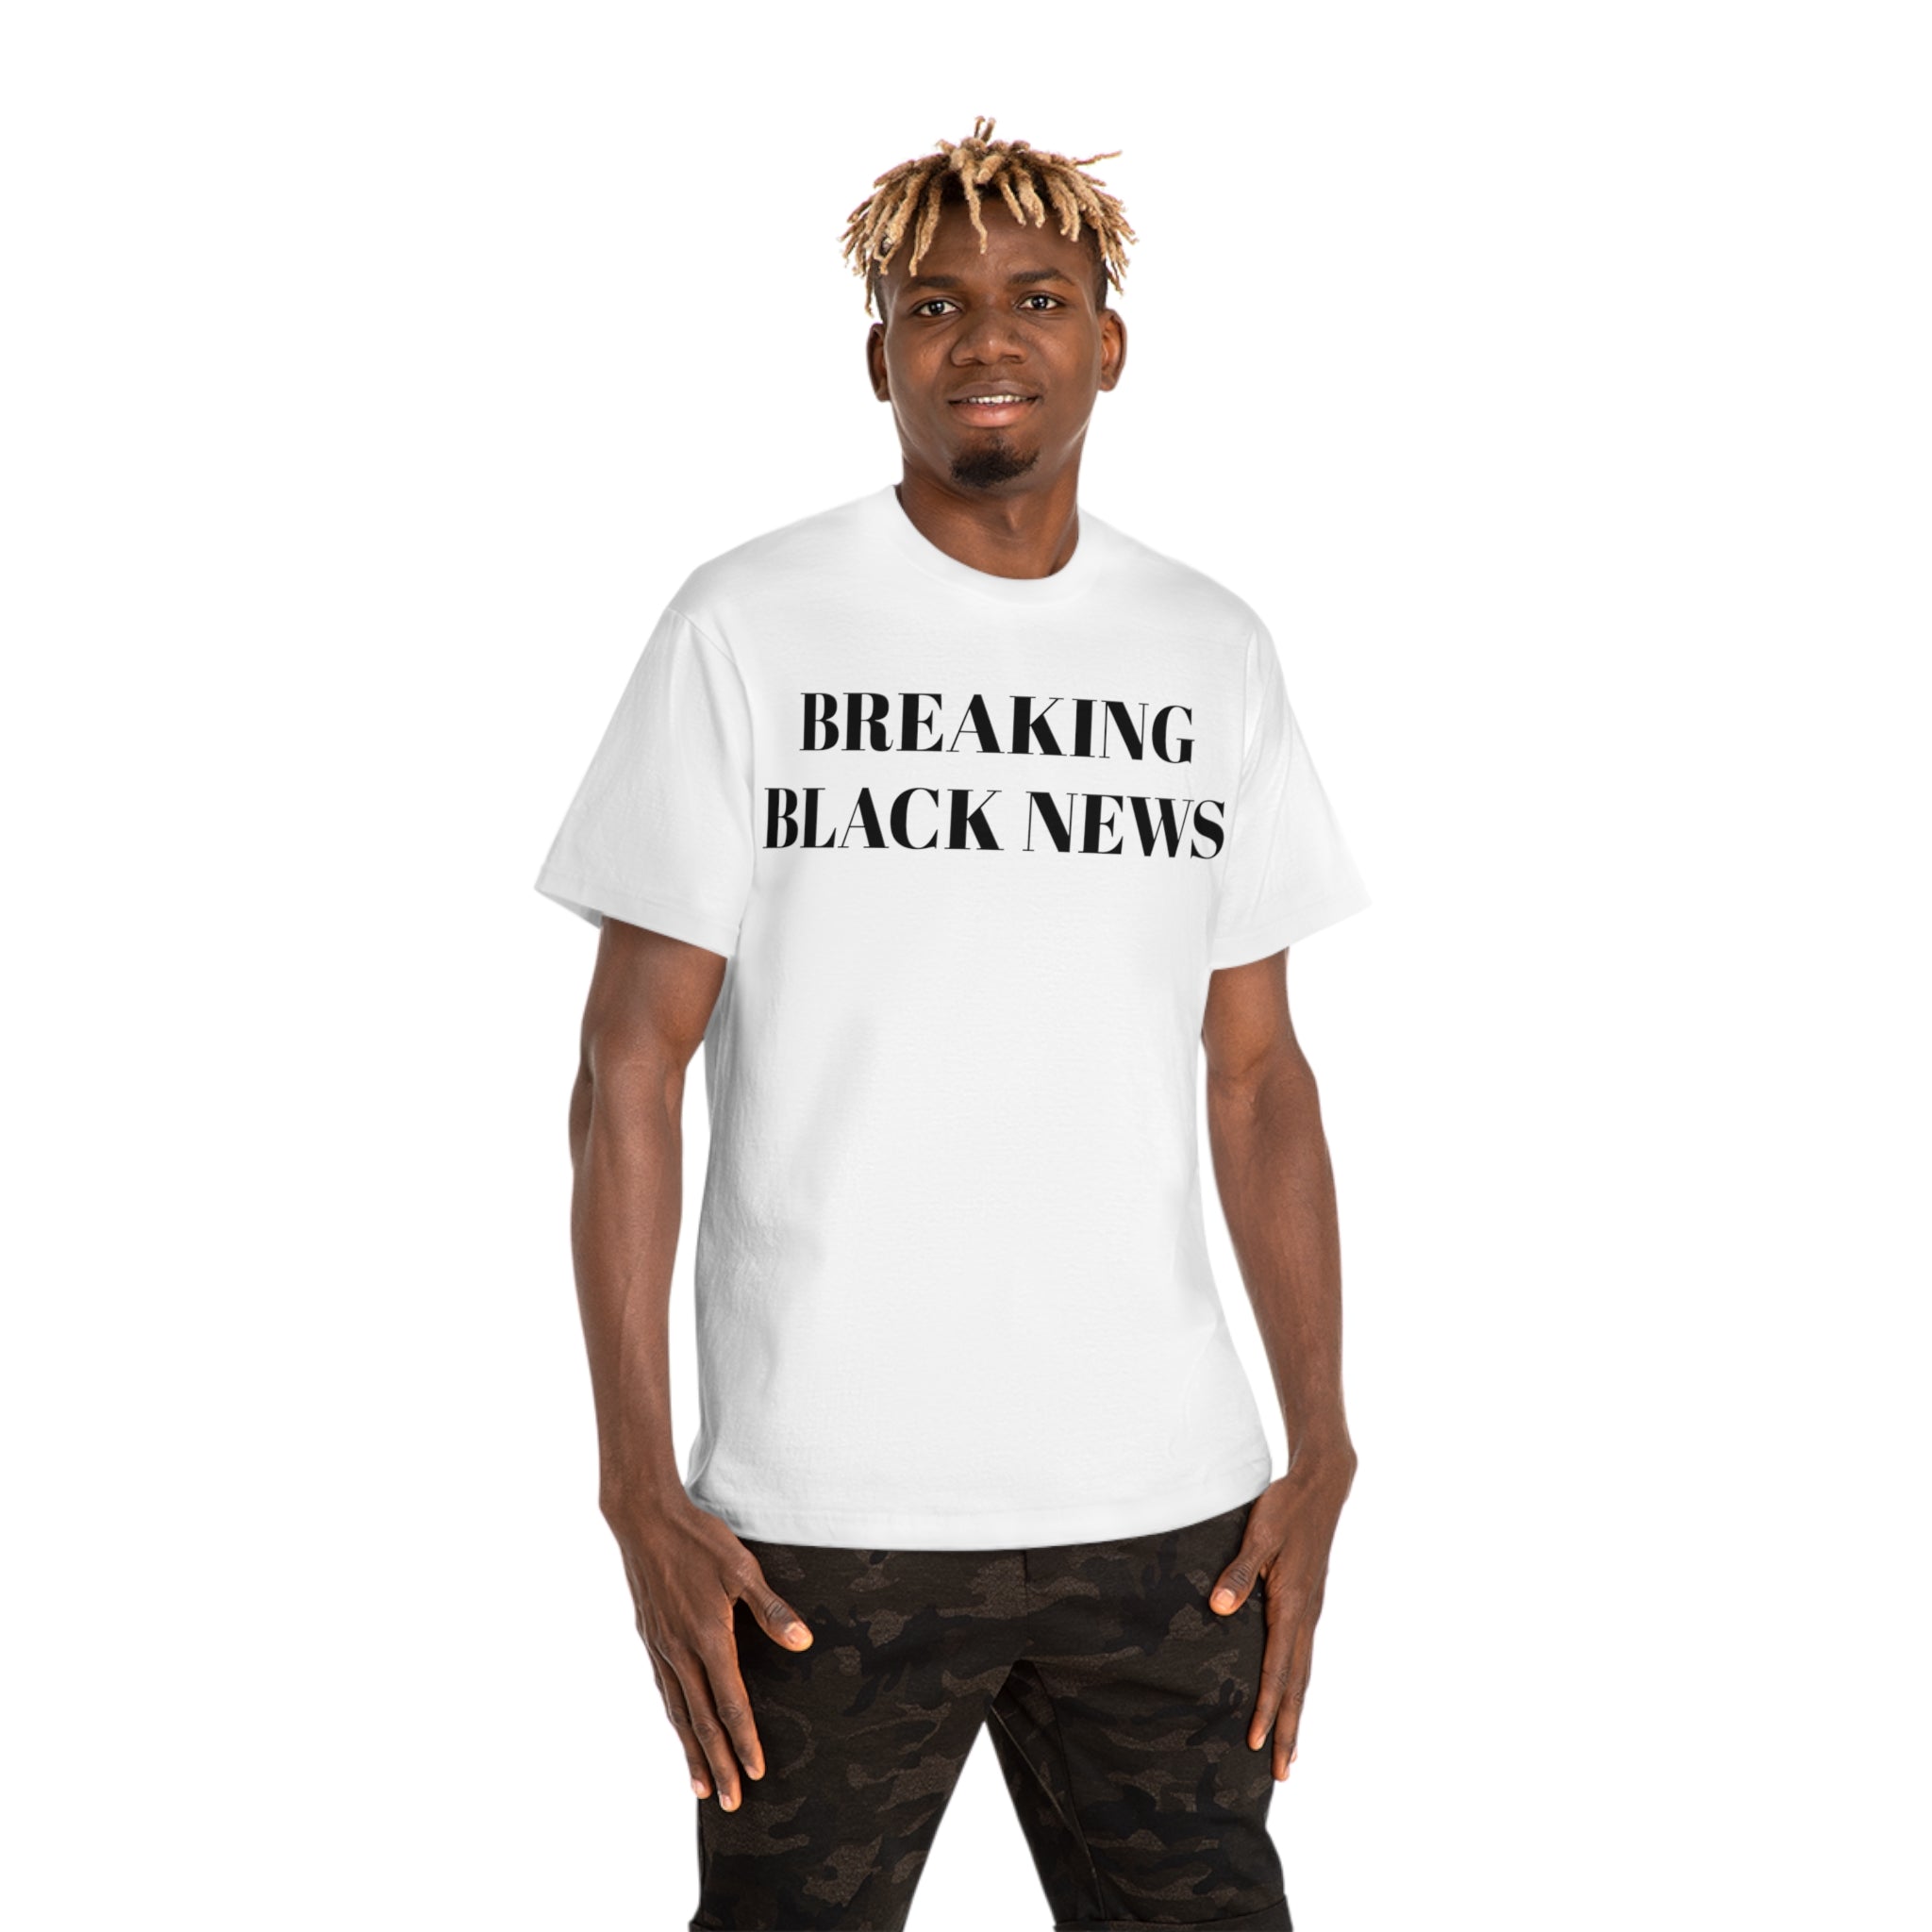 BREAKING BLACK NEWS Unisex T-shirt